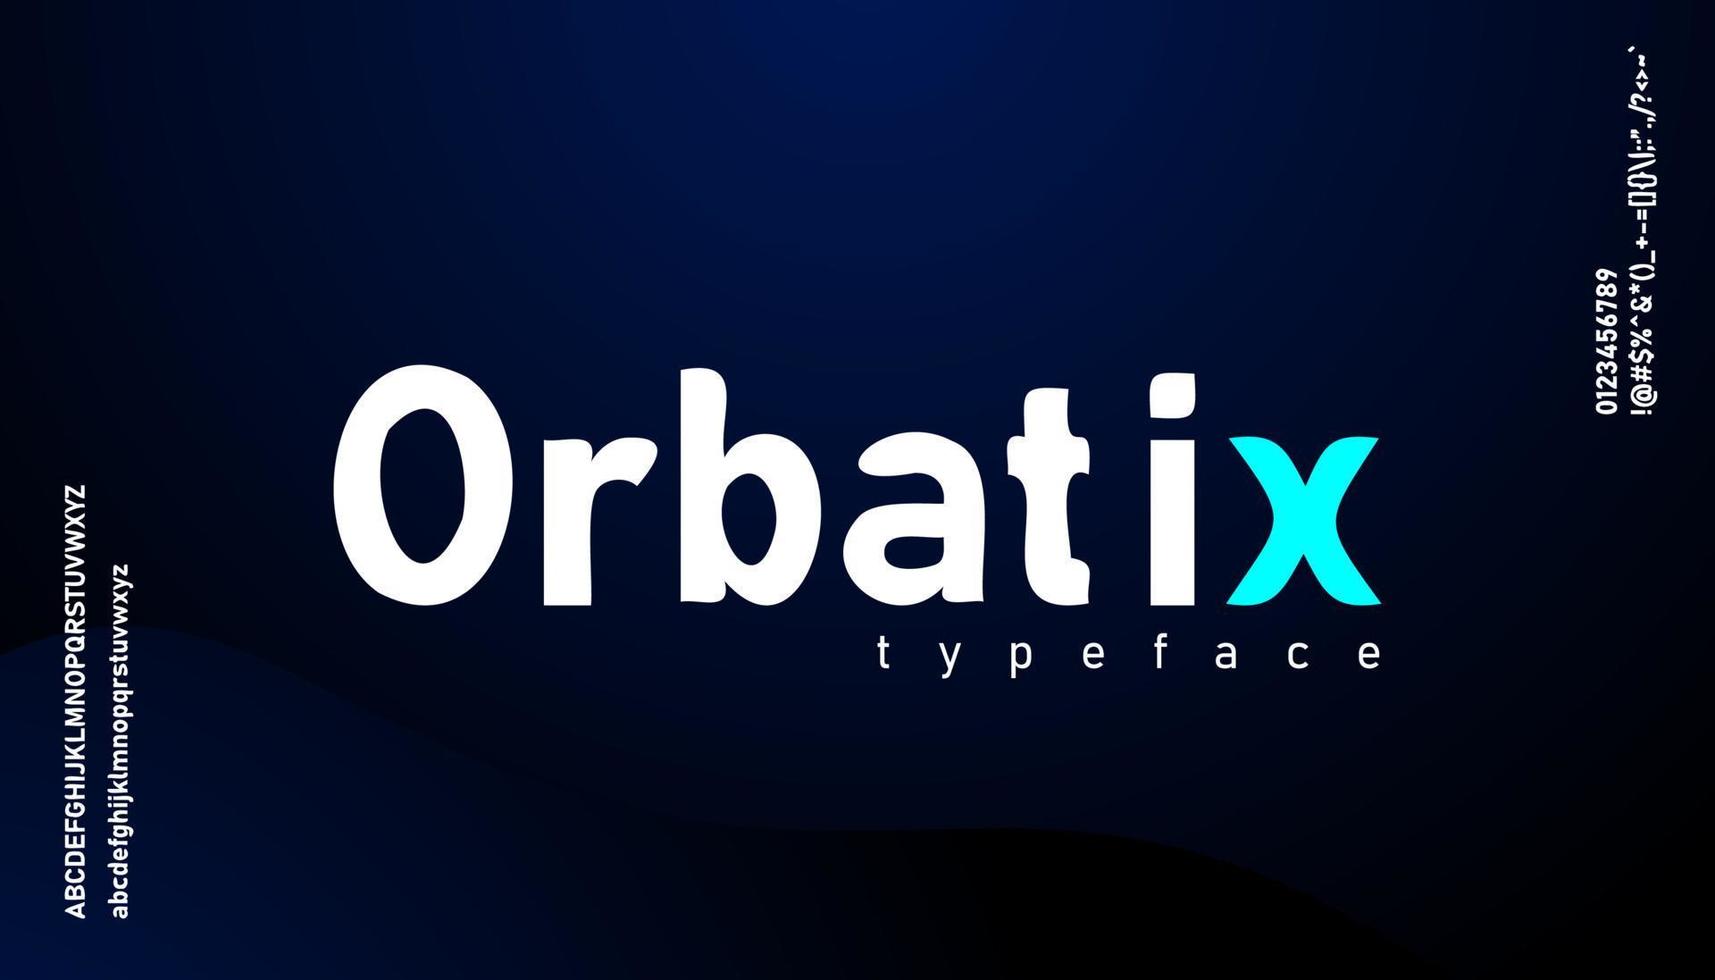 orbatix, fonte de vetor criativo de alfabeto de letras irregulares quebradas simples.